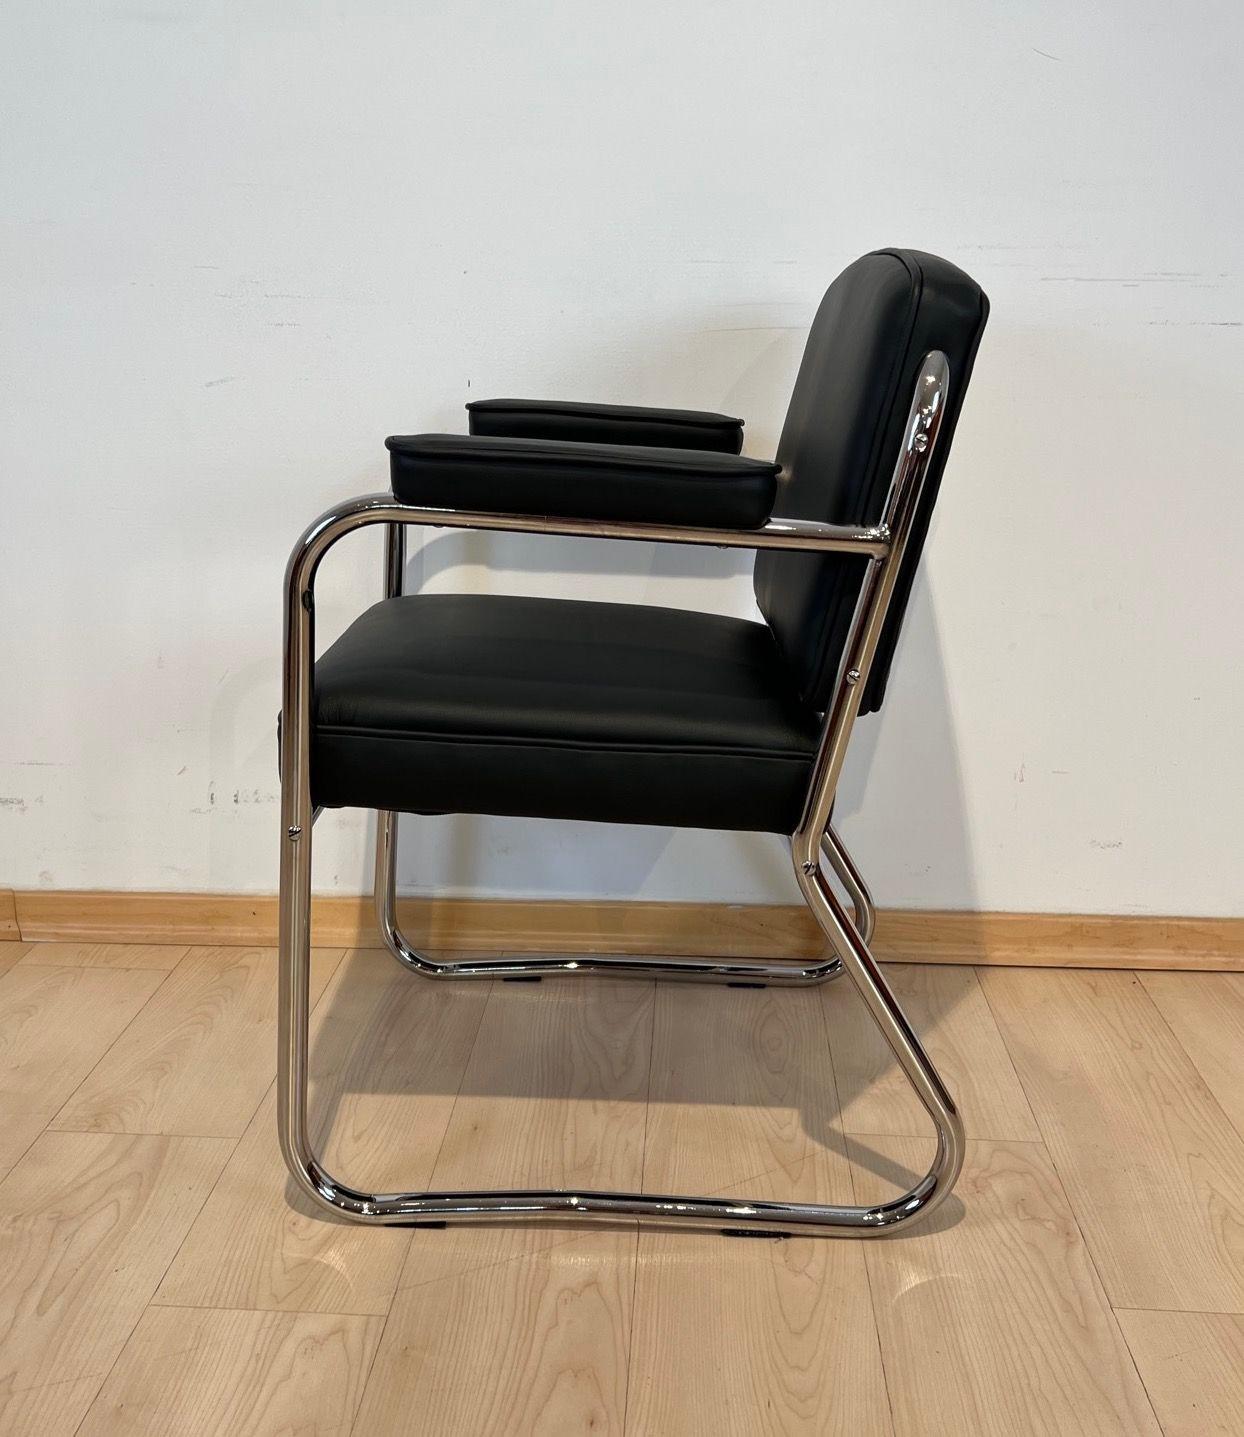 Fauteuil ou chaise de bureau Bauhaus original et entièrement restauré.
Cadre en acier tubulaire, nouvellement chromé et poli. Le siège, le dossier et les accoudoirs ont été recouverts de cuir noir/gris foncé.
Dimensions :
H 83 cm x L 57 cm x P 60 cm